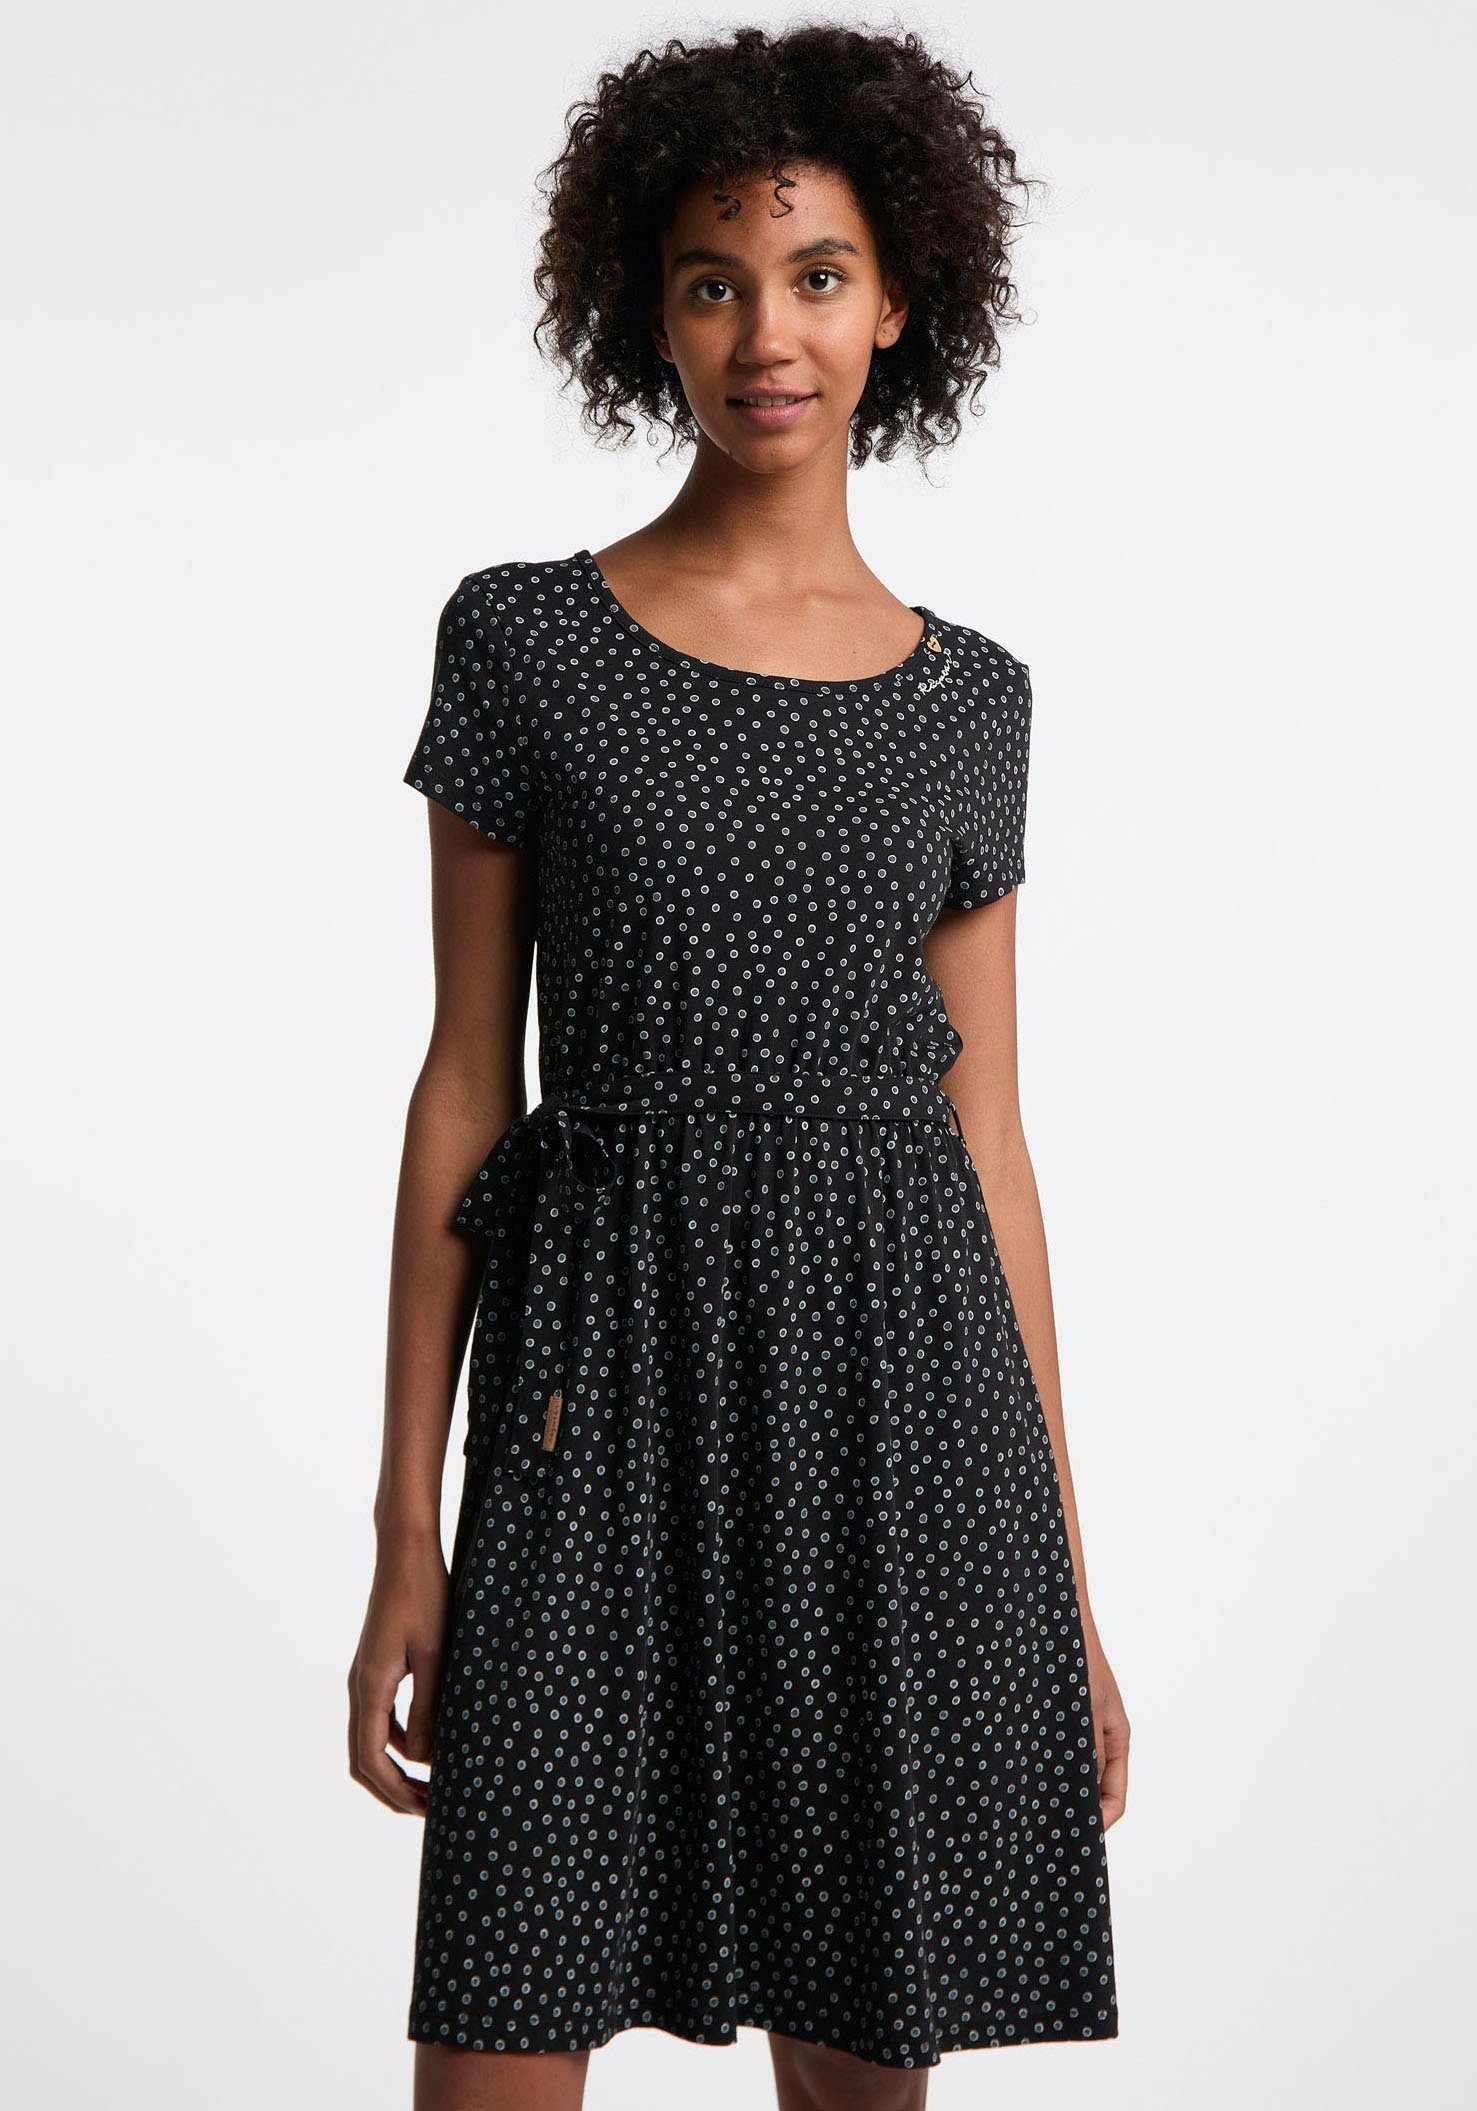 OLINA schwarz Ragwear DRESS Sommerkleid Allover mit Punkte-Muster tollem ORGANIC